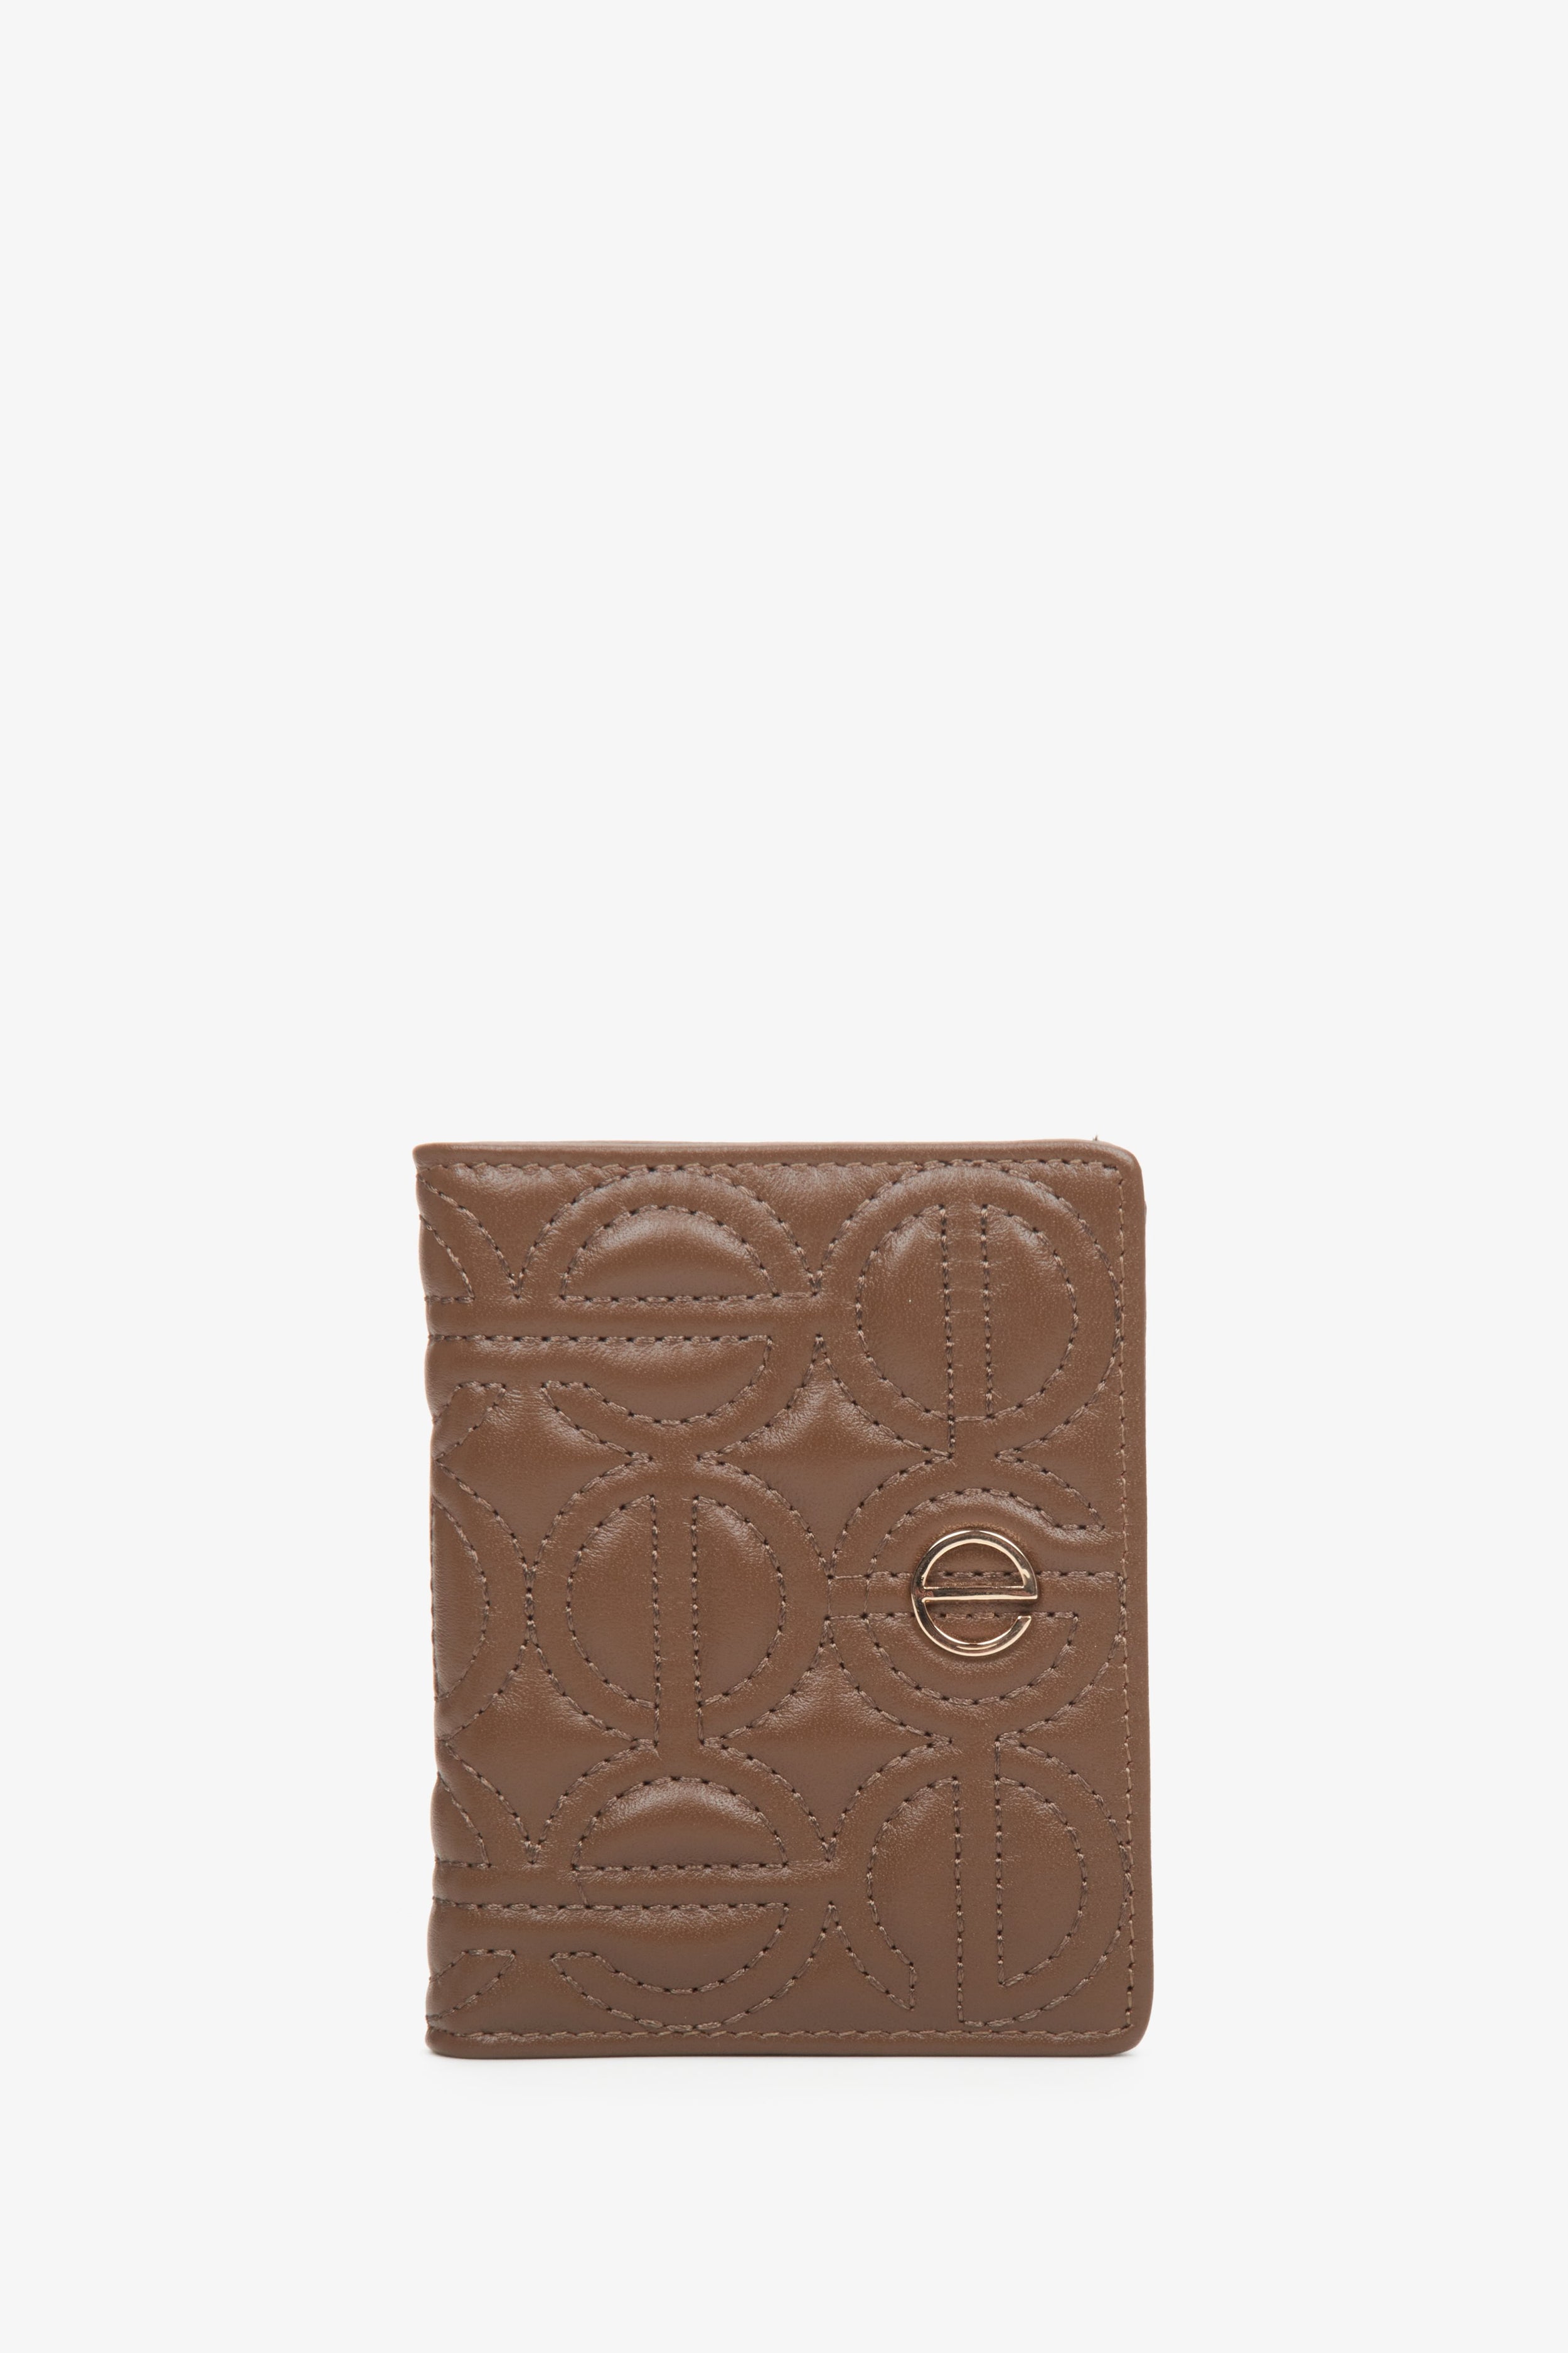 Estro: Mały skórzany portfel damski w kolorze ciemnobrązowym ze złotymi okuciami